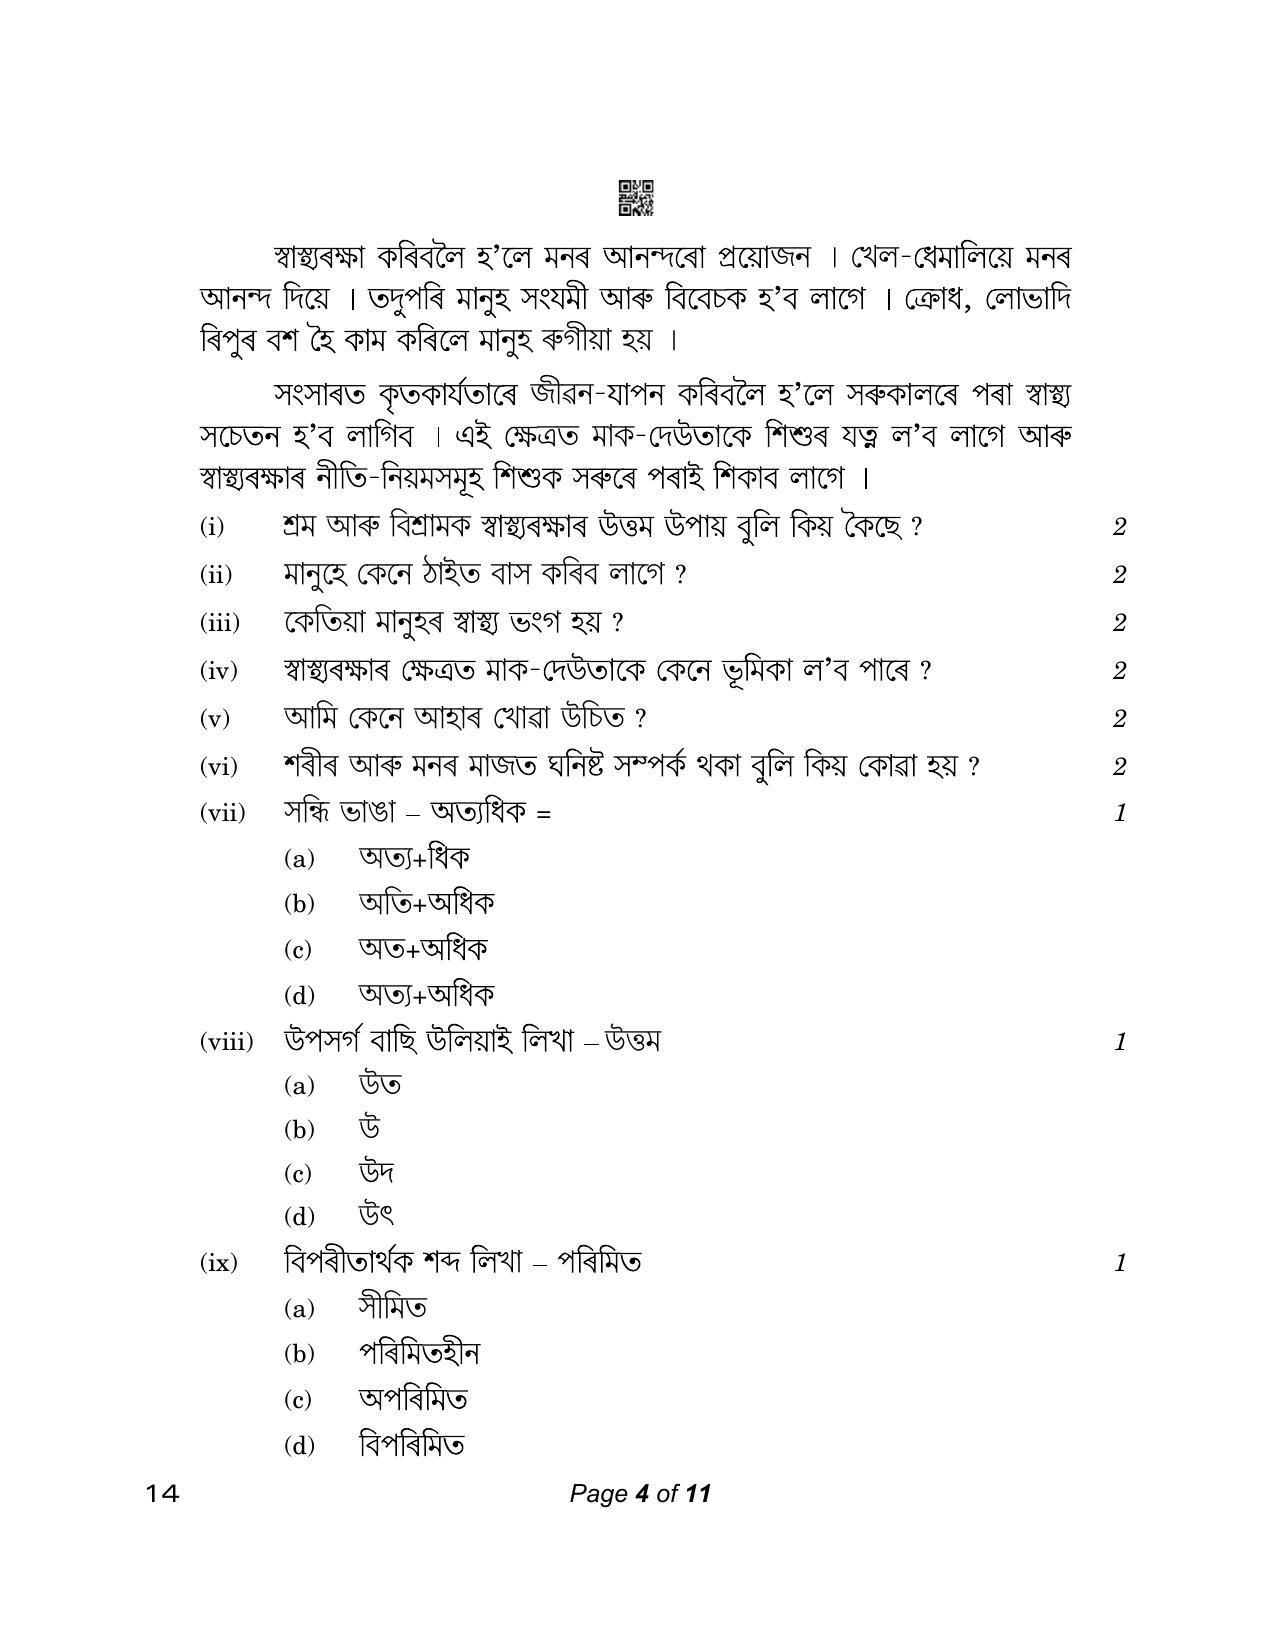 CBSE Class 12 14_Assamese 2023 Question Paper - Page 4